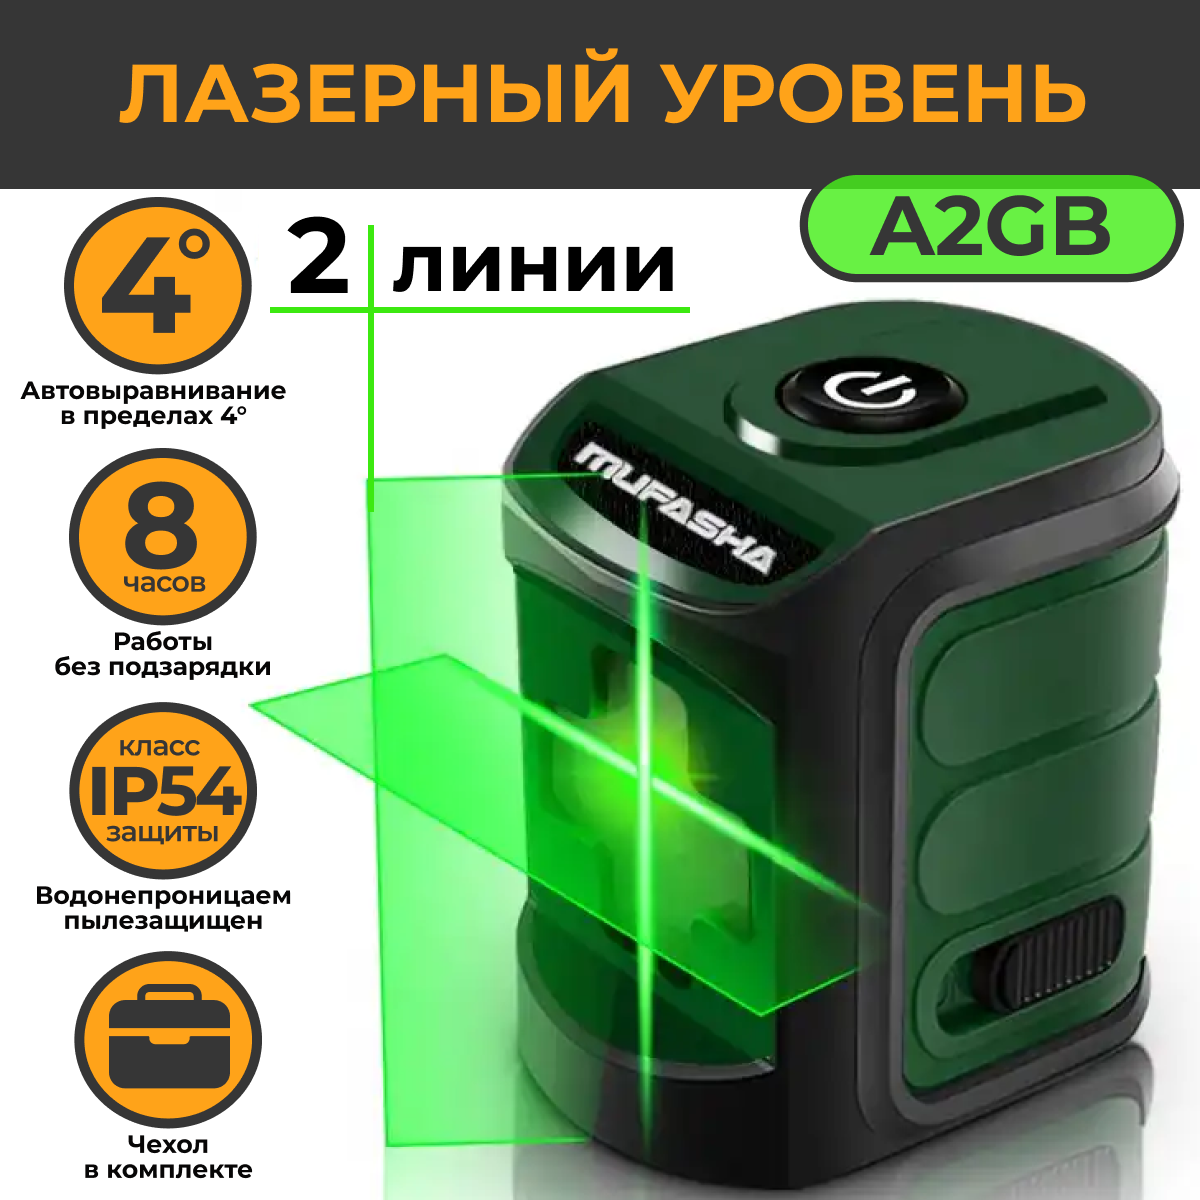 Лазерный уровень MUFASHA нивелир, 2 лазерных луча (A2GB зеленый), мини лазерный нивелир зубр крест 34900